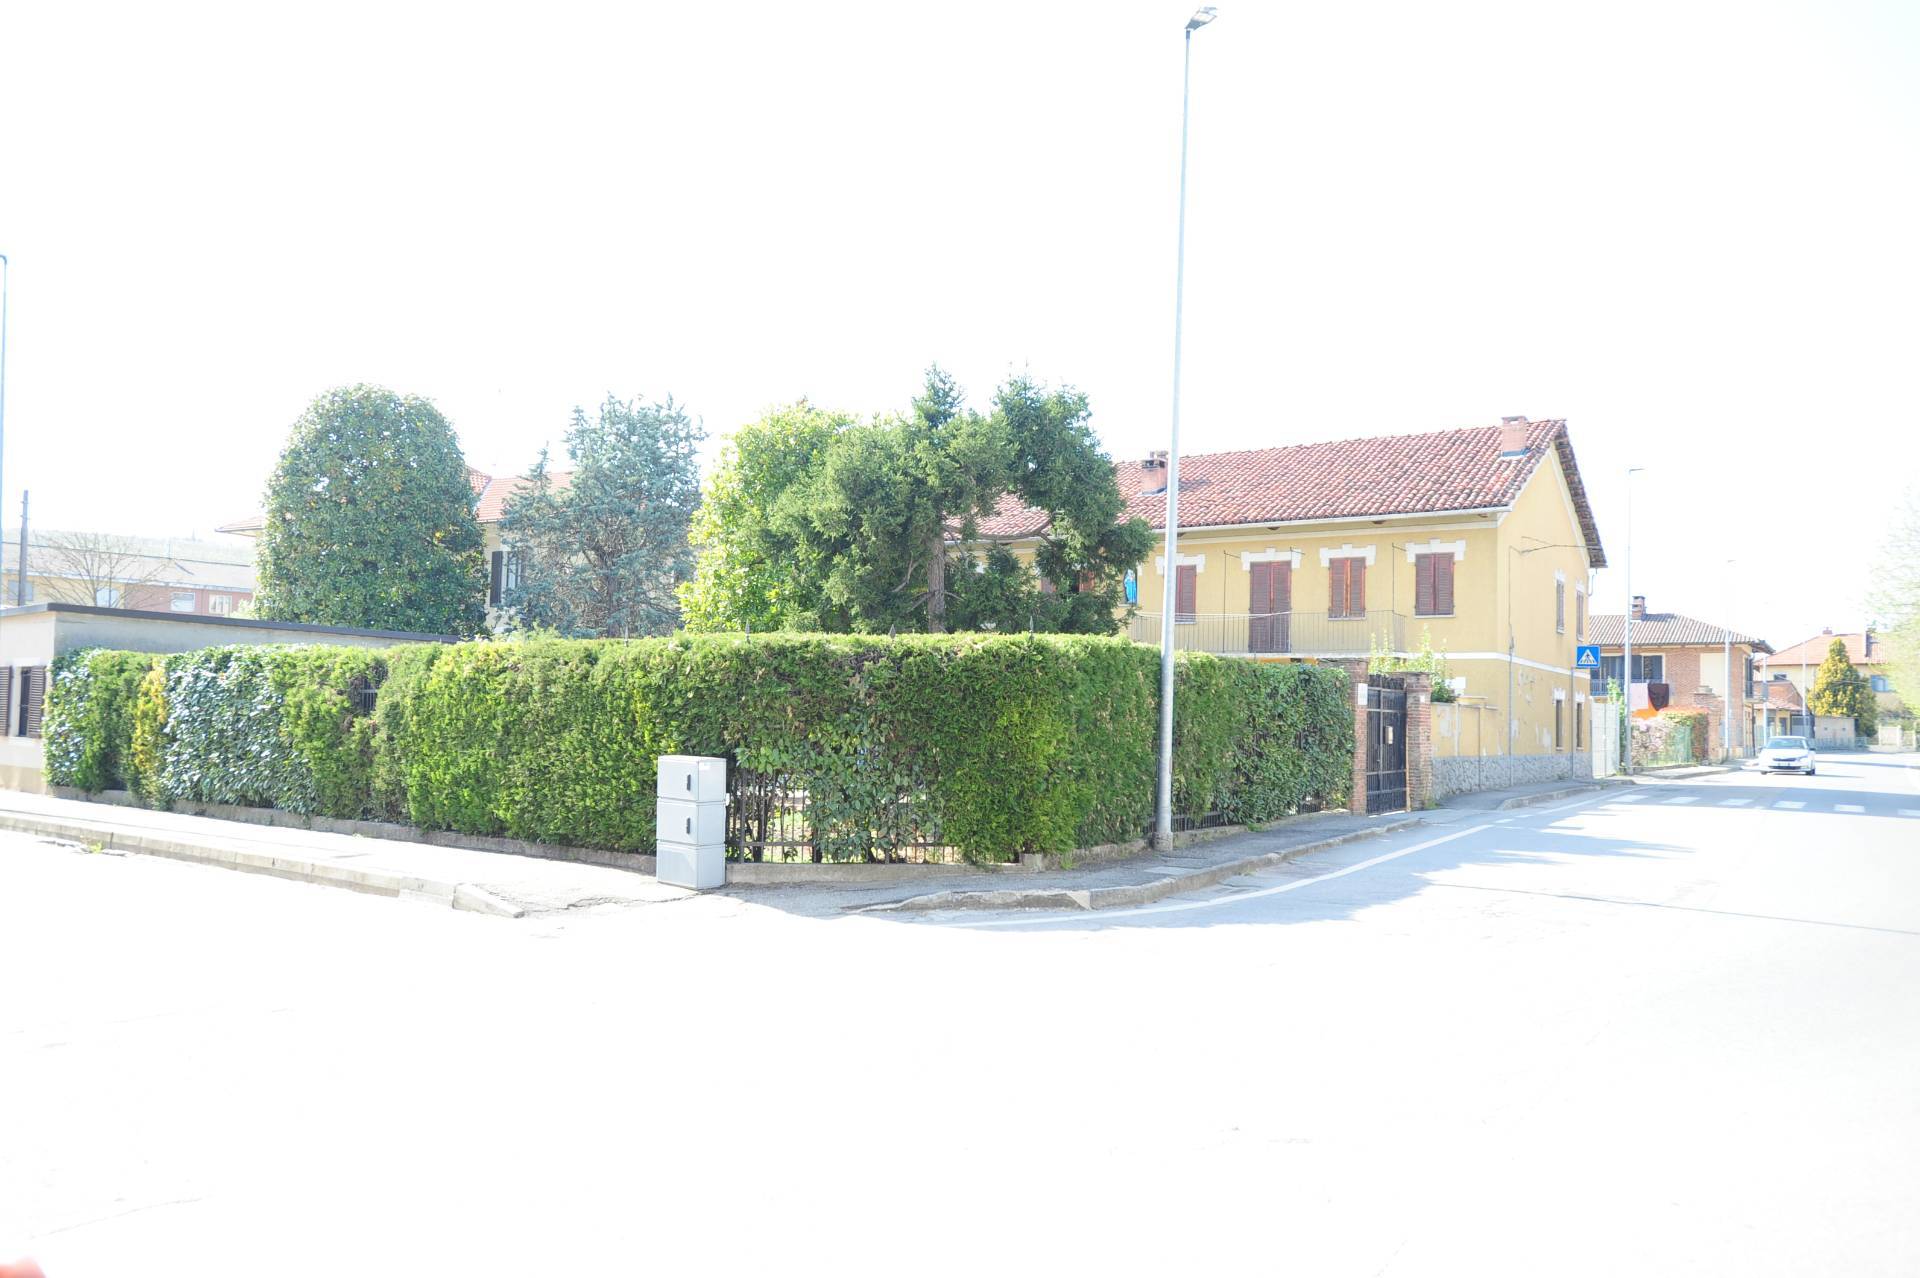 Rustico / Casale in vendita a Castelnuovo Don Bosco, 8 locali, zona Località: Centro, prezzo € 168.000 | PortaleAgenzieImmobiliari.it